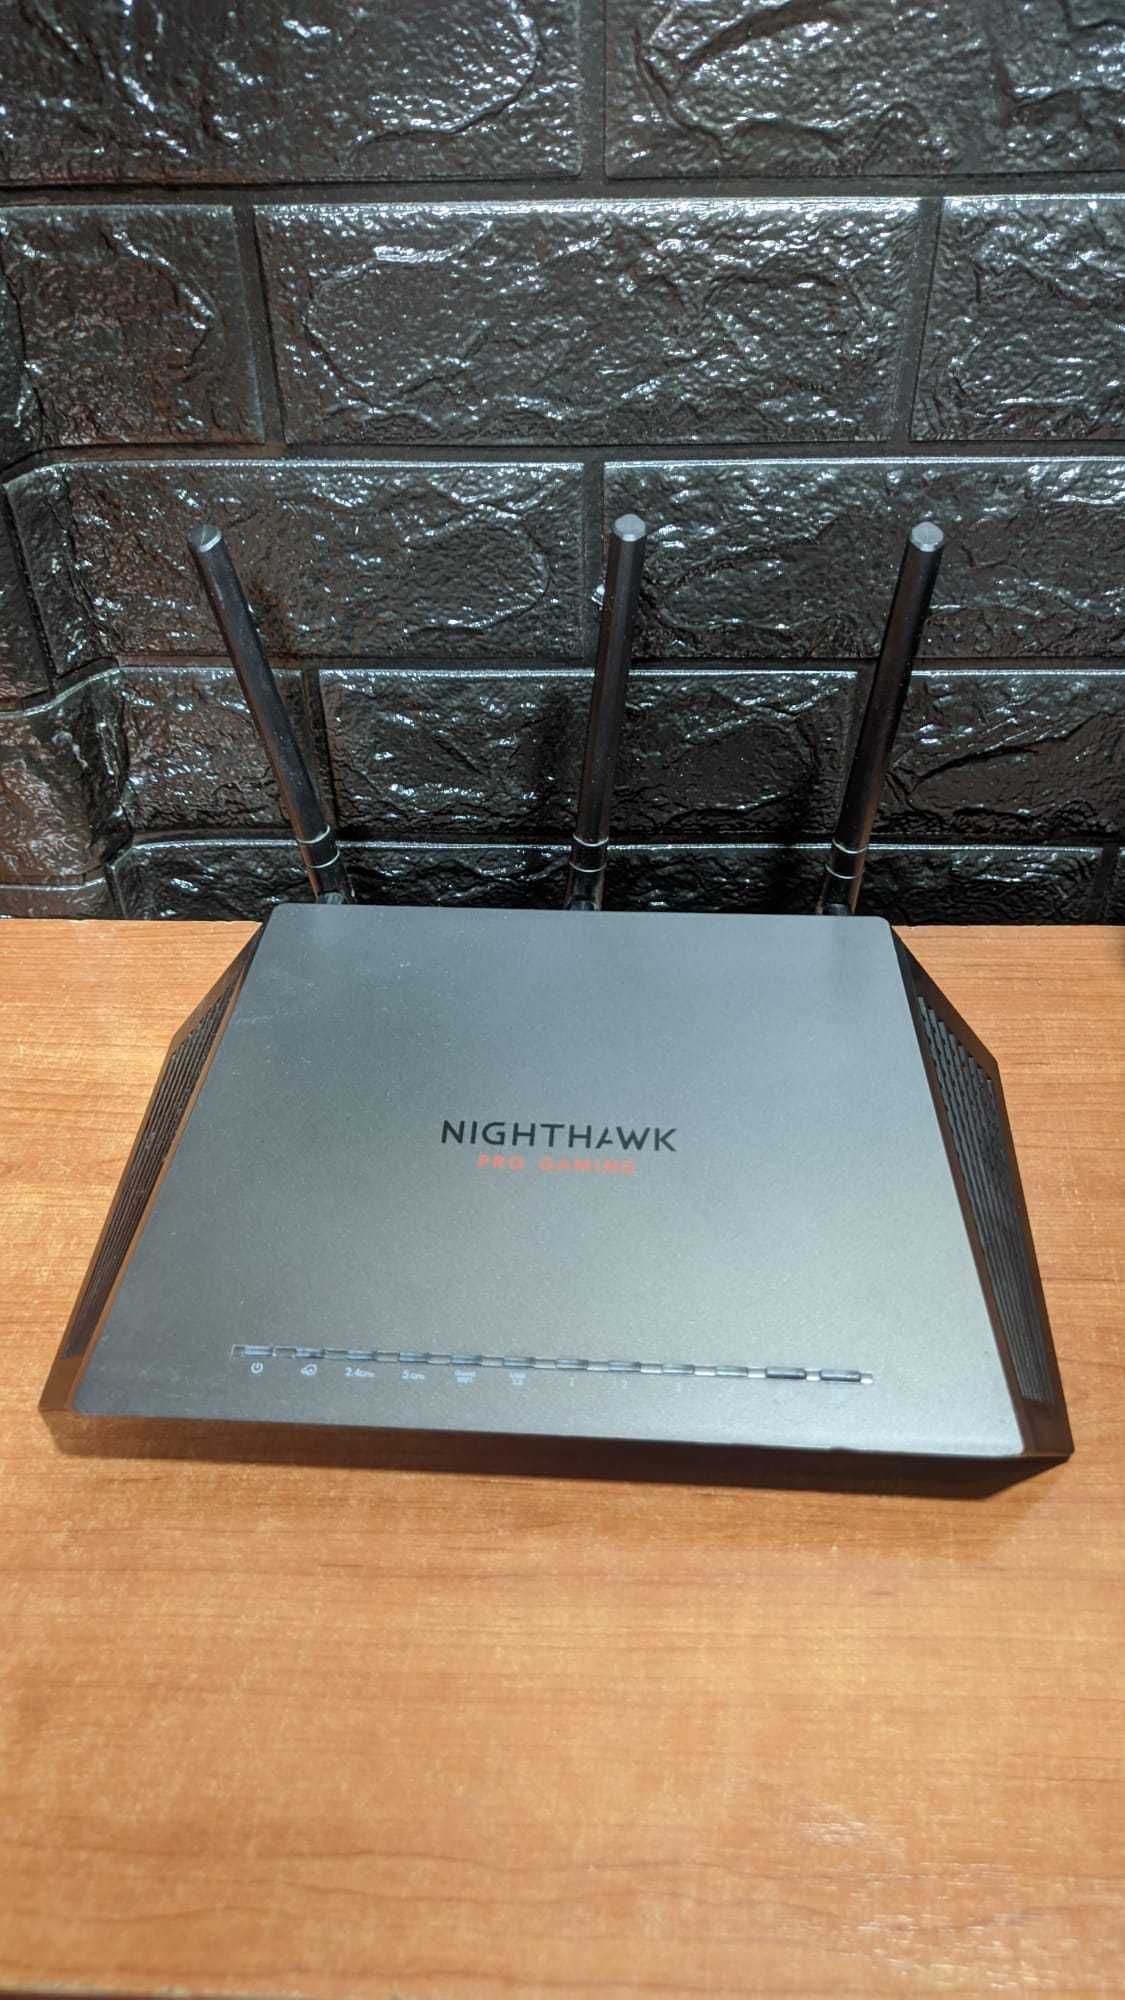 NETGEAR XR300 Nighthawk Pro Gaming wireless router